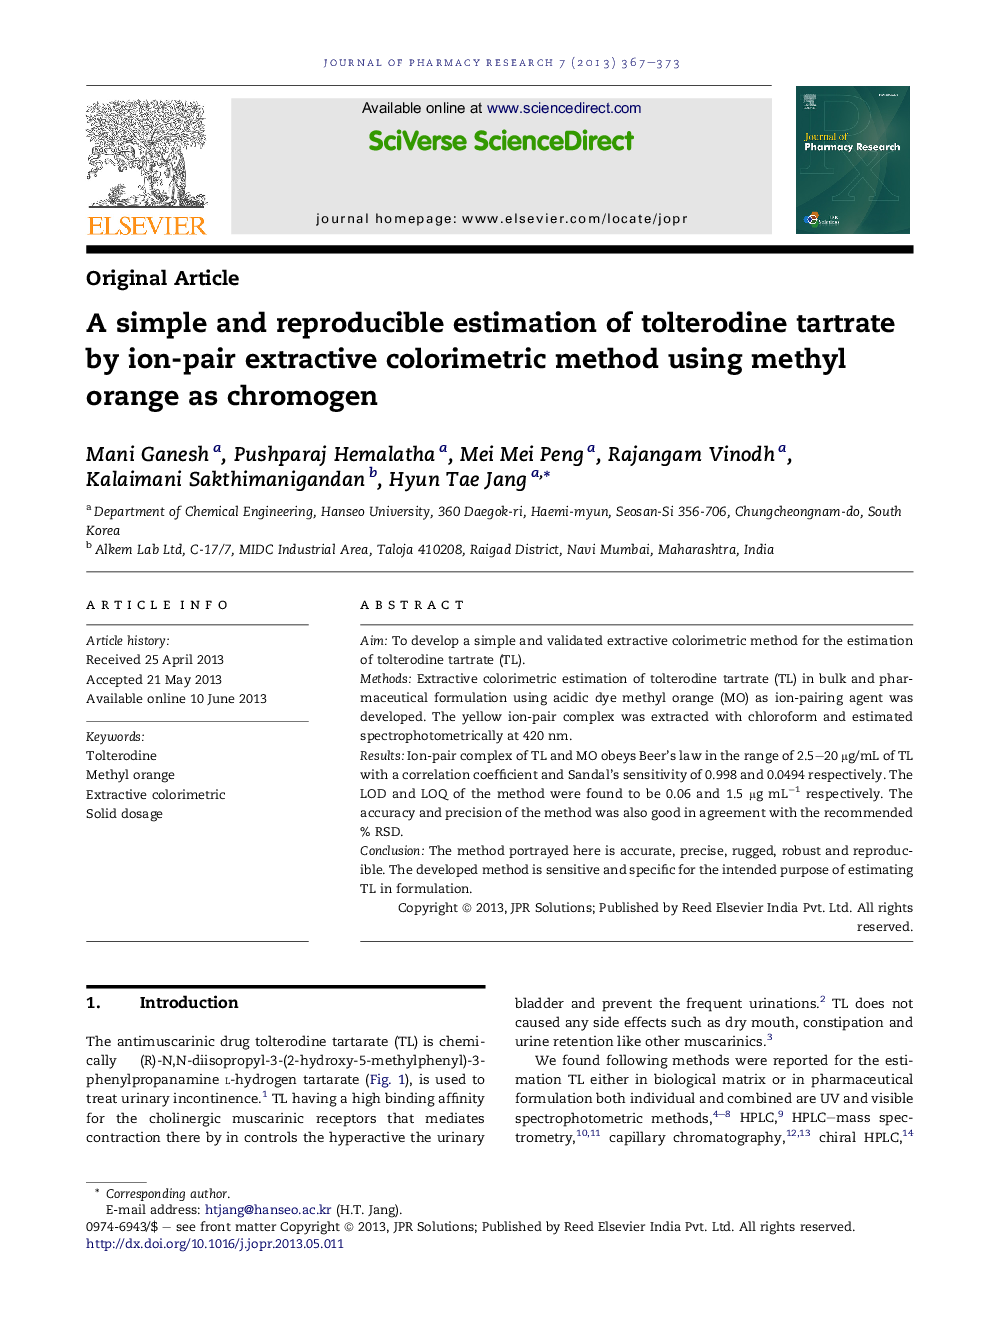 برآورد ساده و قابل تجدید تلتراتین تلترودین با استفاده از روش رنگ سنجی استخراج جفت یونی با استفاده از متیل نارنج به عنوان کروموژن 